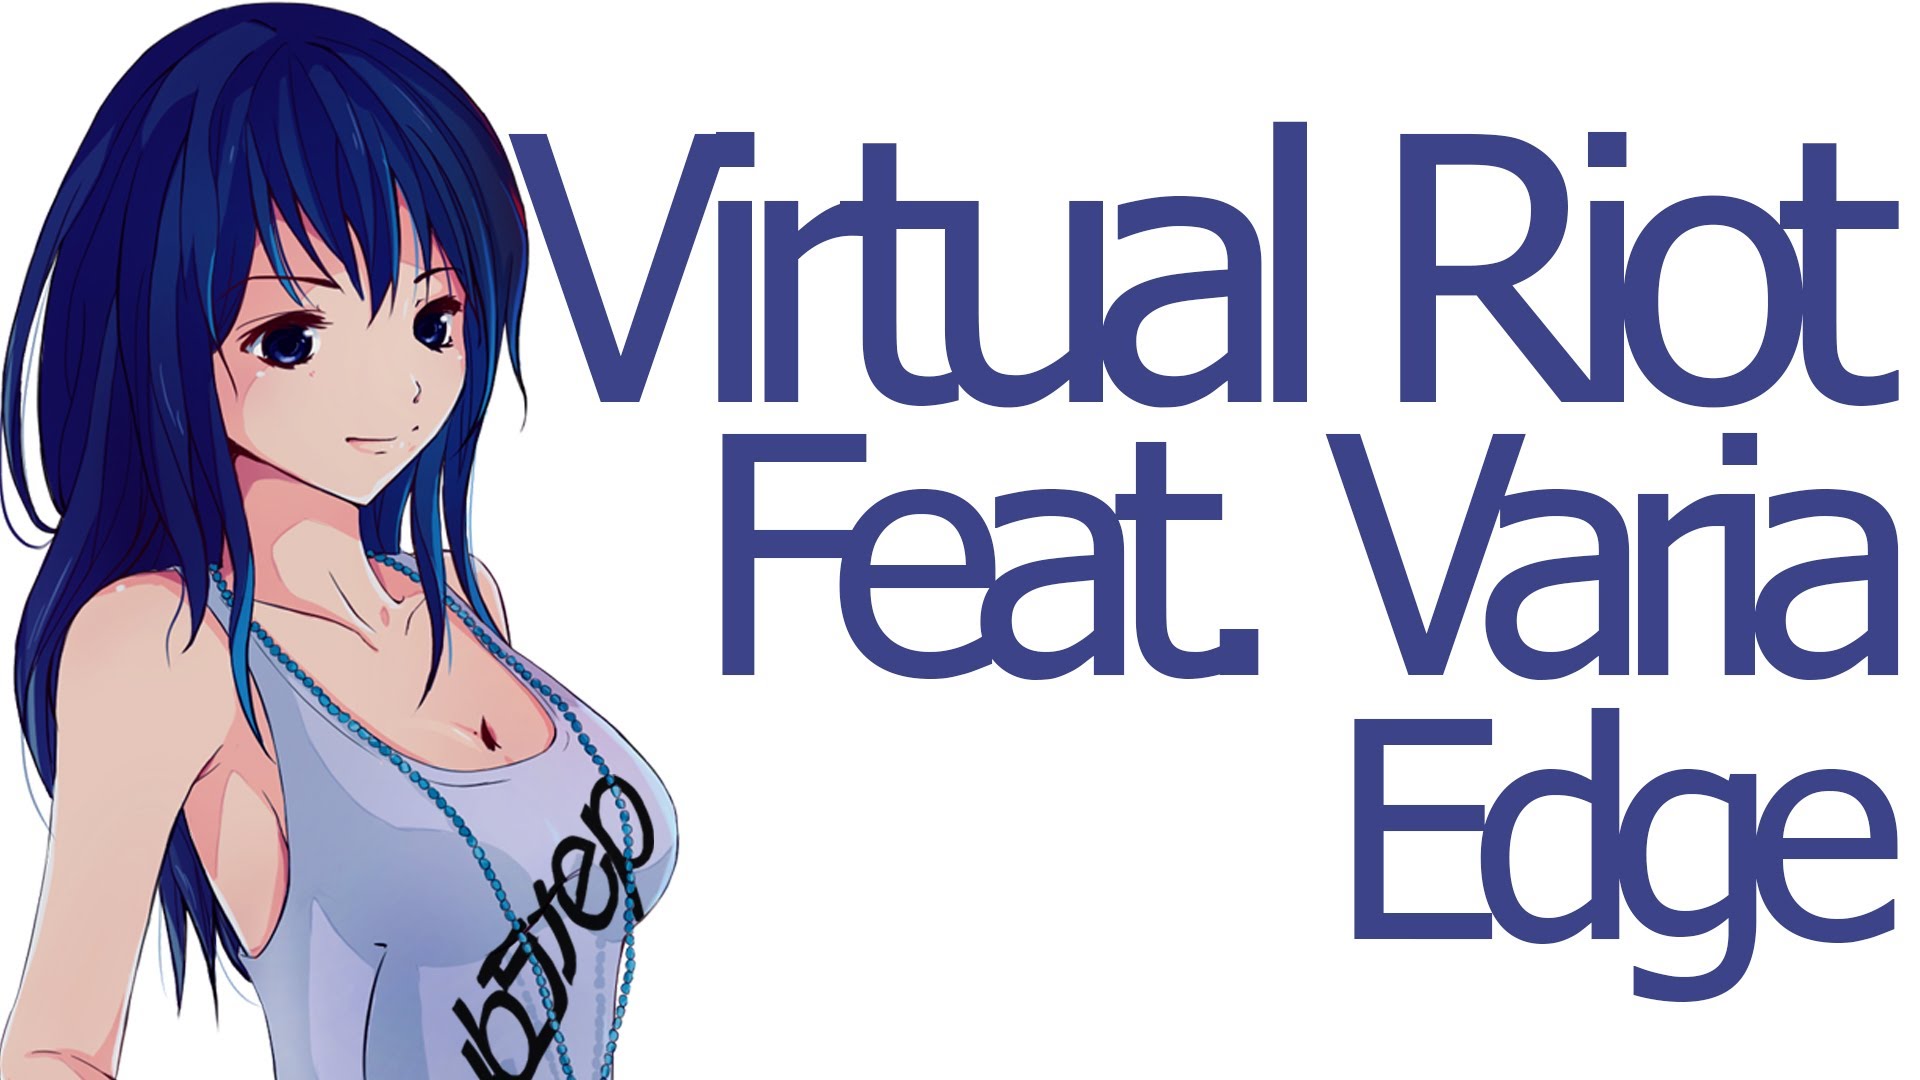 Drum Bass Virtual Riot Feat Varia Edge